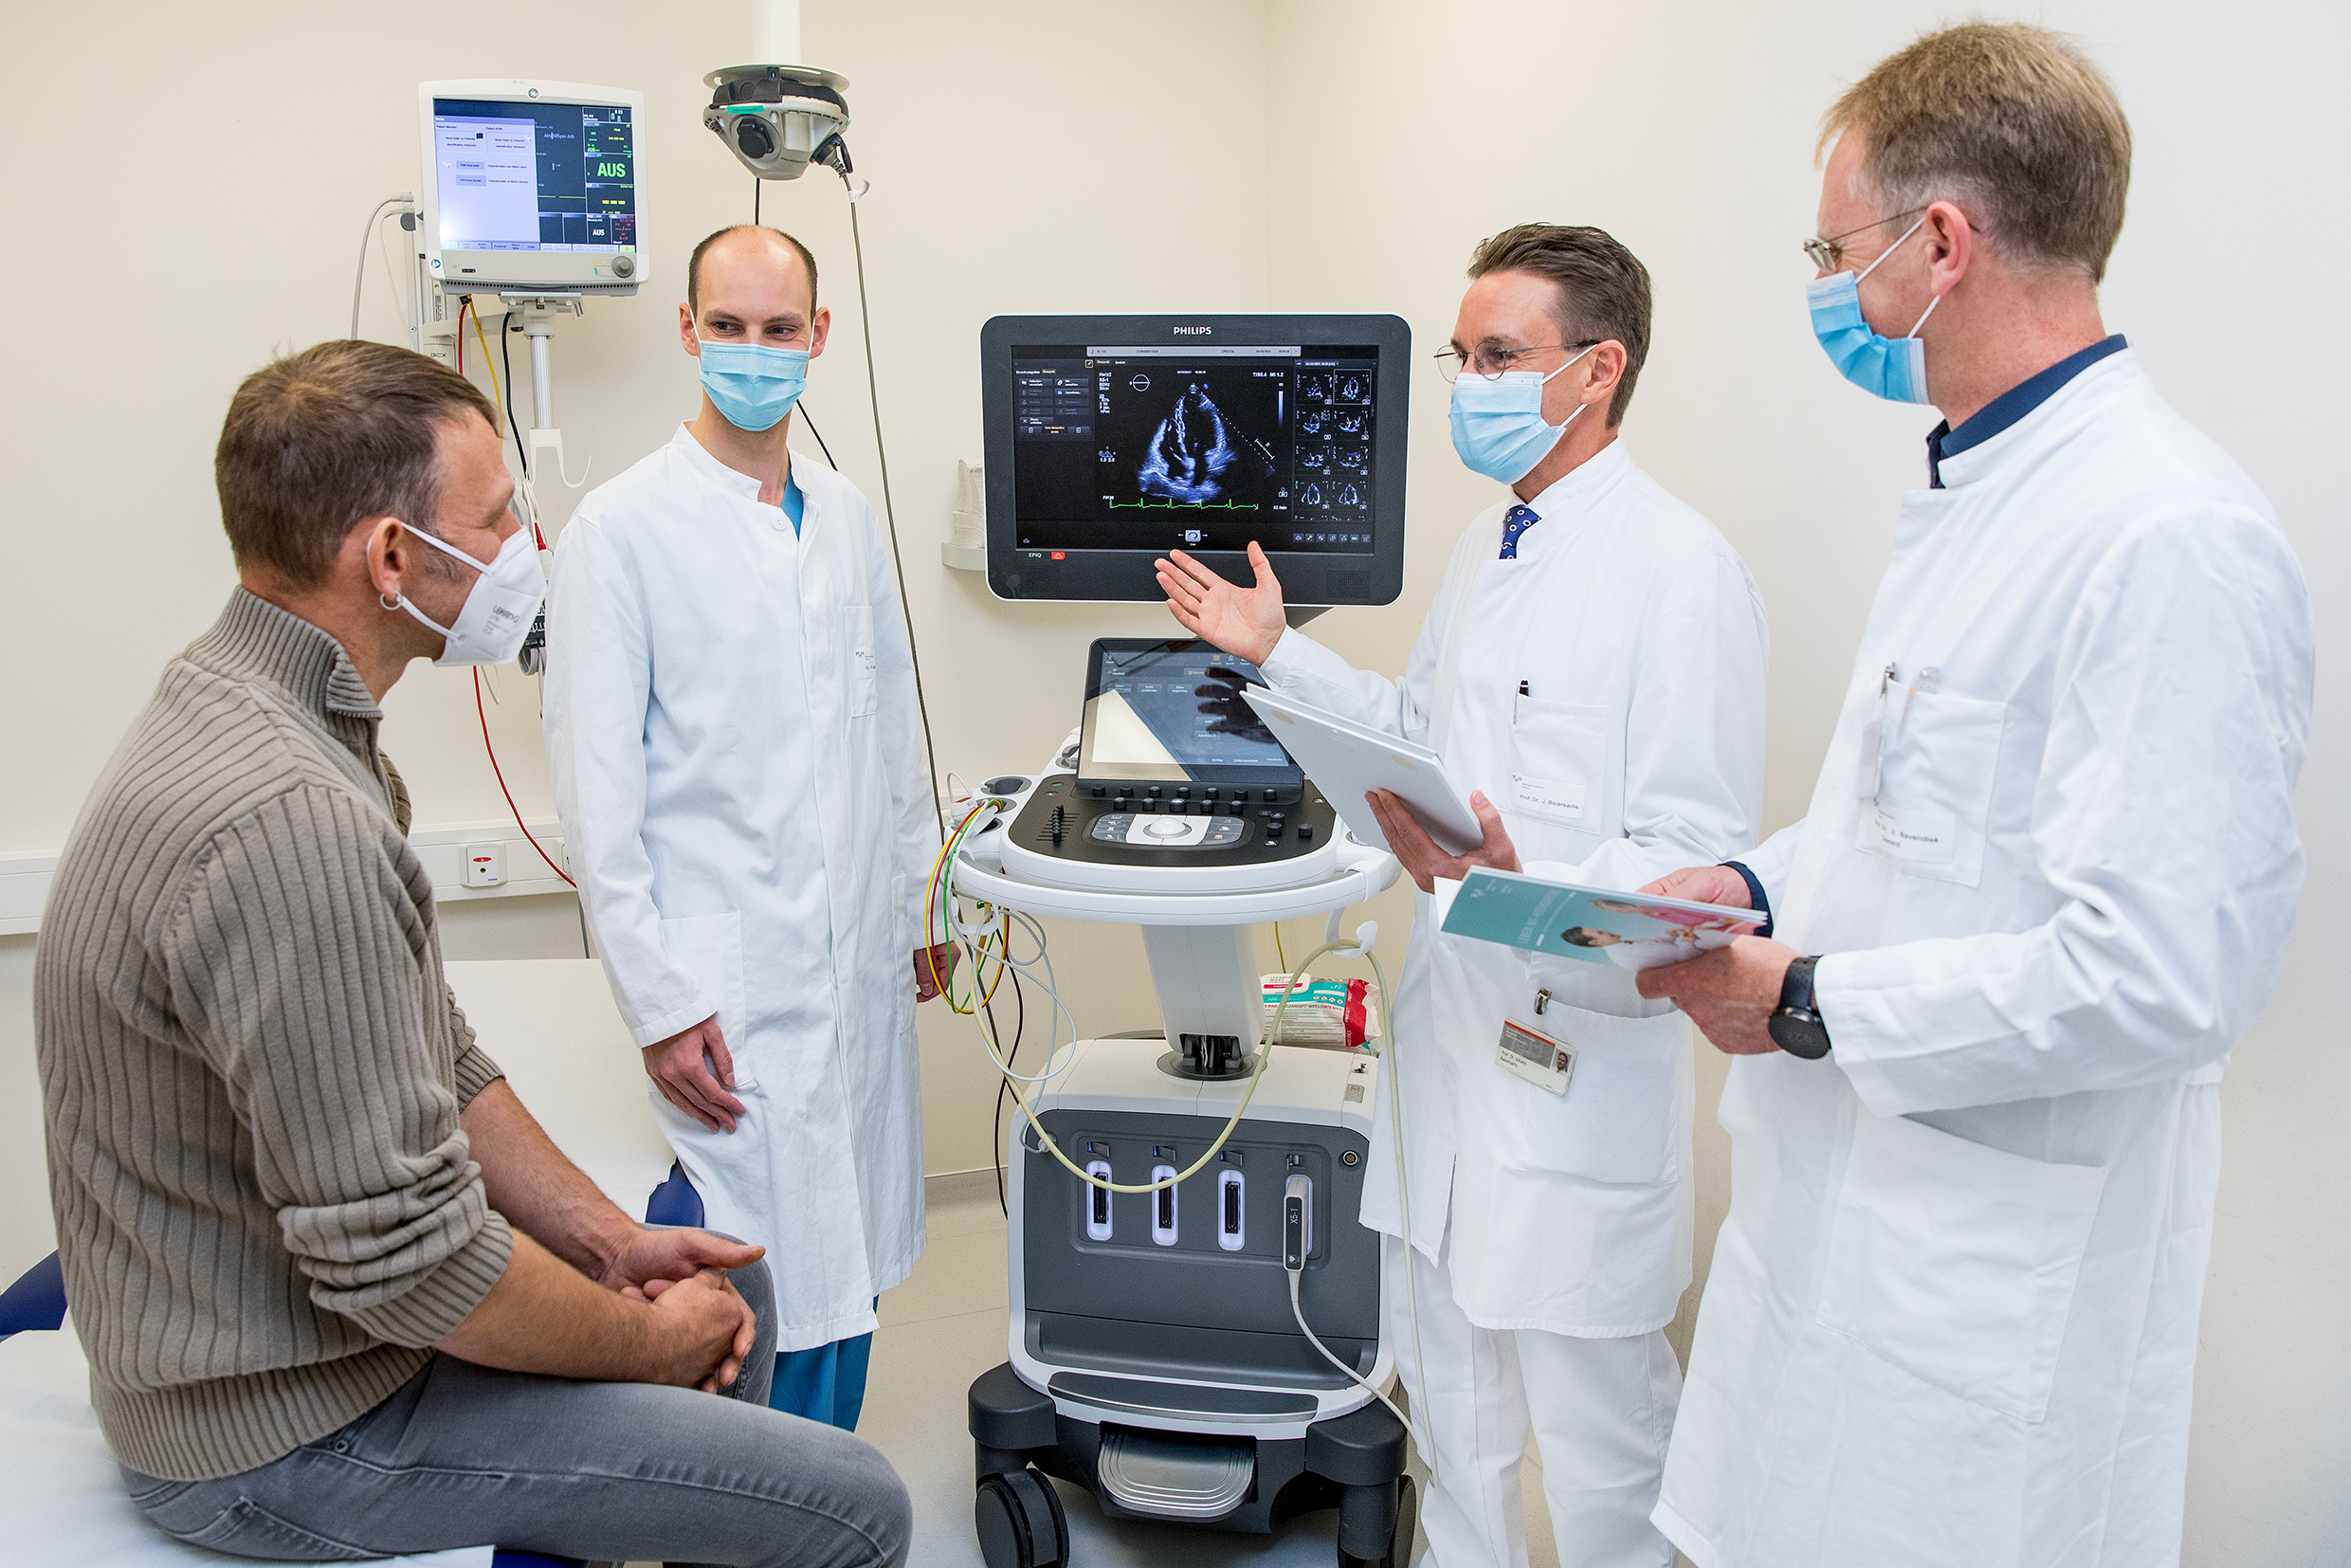 Patient Thorsten S. sitzt auf einer Patientenliege, rechts daneben stehen Dr. Fabian Rathje, Professor Dr. Johann Bauersachs und Professor Dr. Udo Bavendiek. In der Mitte ein Bildschirm mit einer Aufnahme des Herzens.  